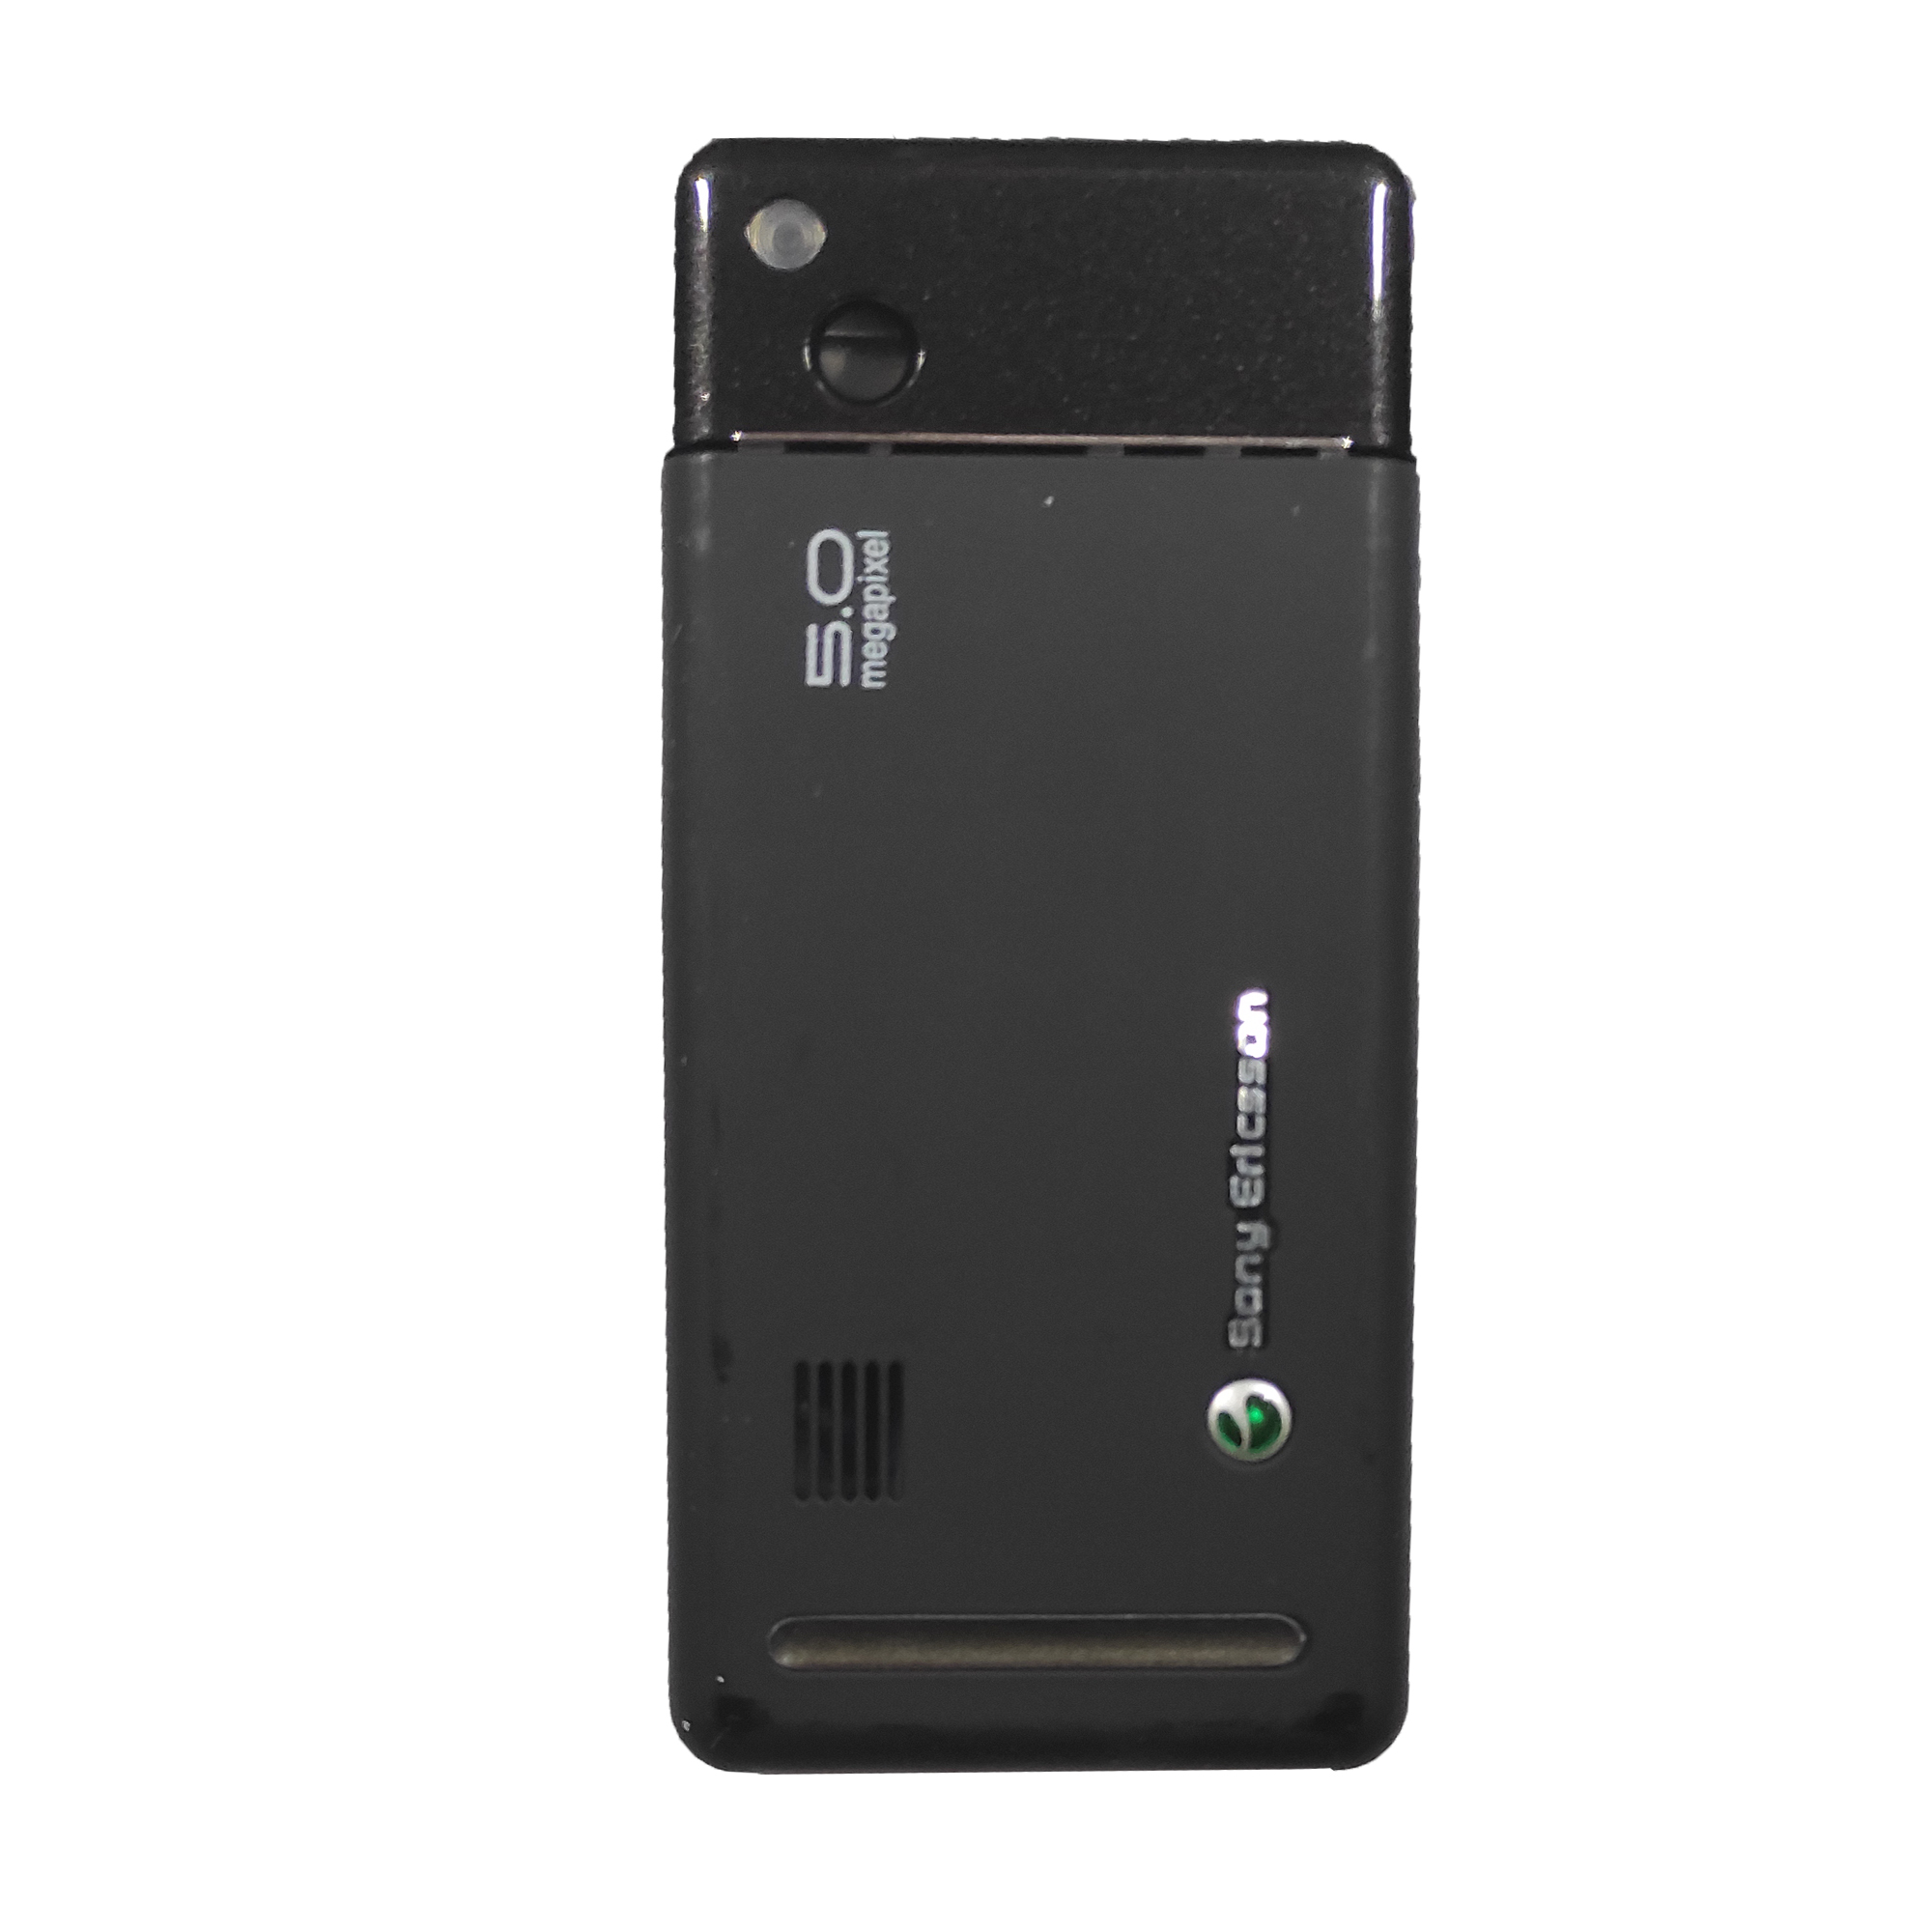 شاسی گوشی موبایل مدل G900 مناسب برای گوشی موبایل سونی اریکسون G900